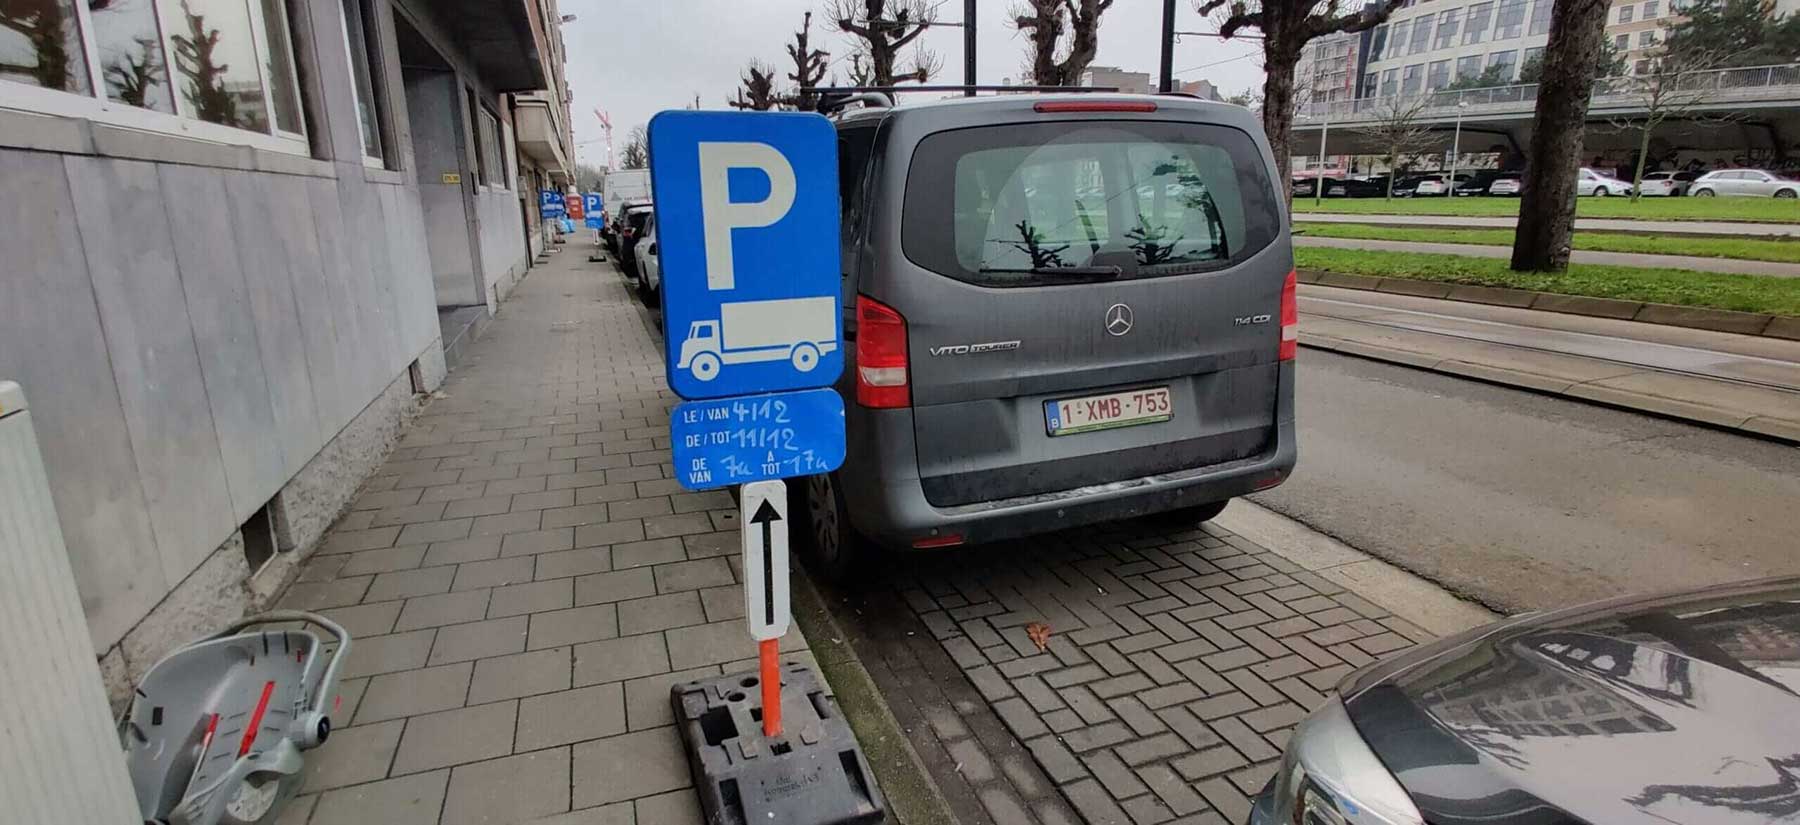 Wegsignalisatie set E9c parkeerborden huren en laten plaatsen in Gent